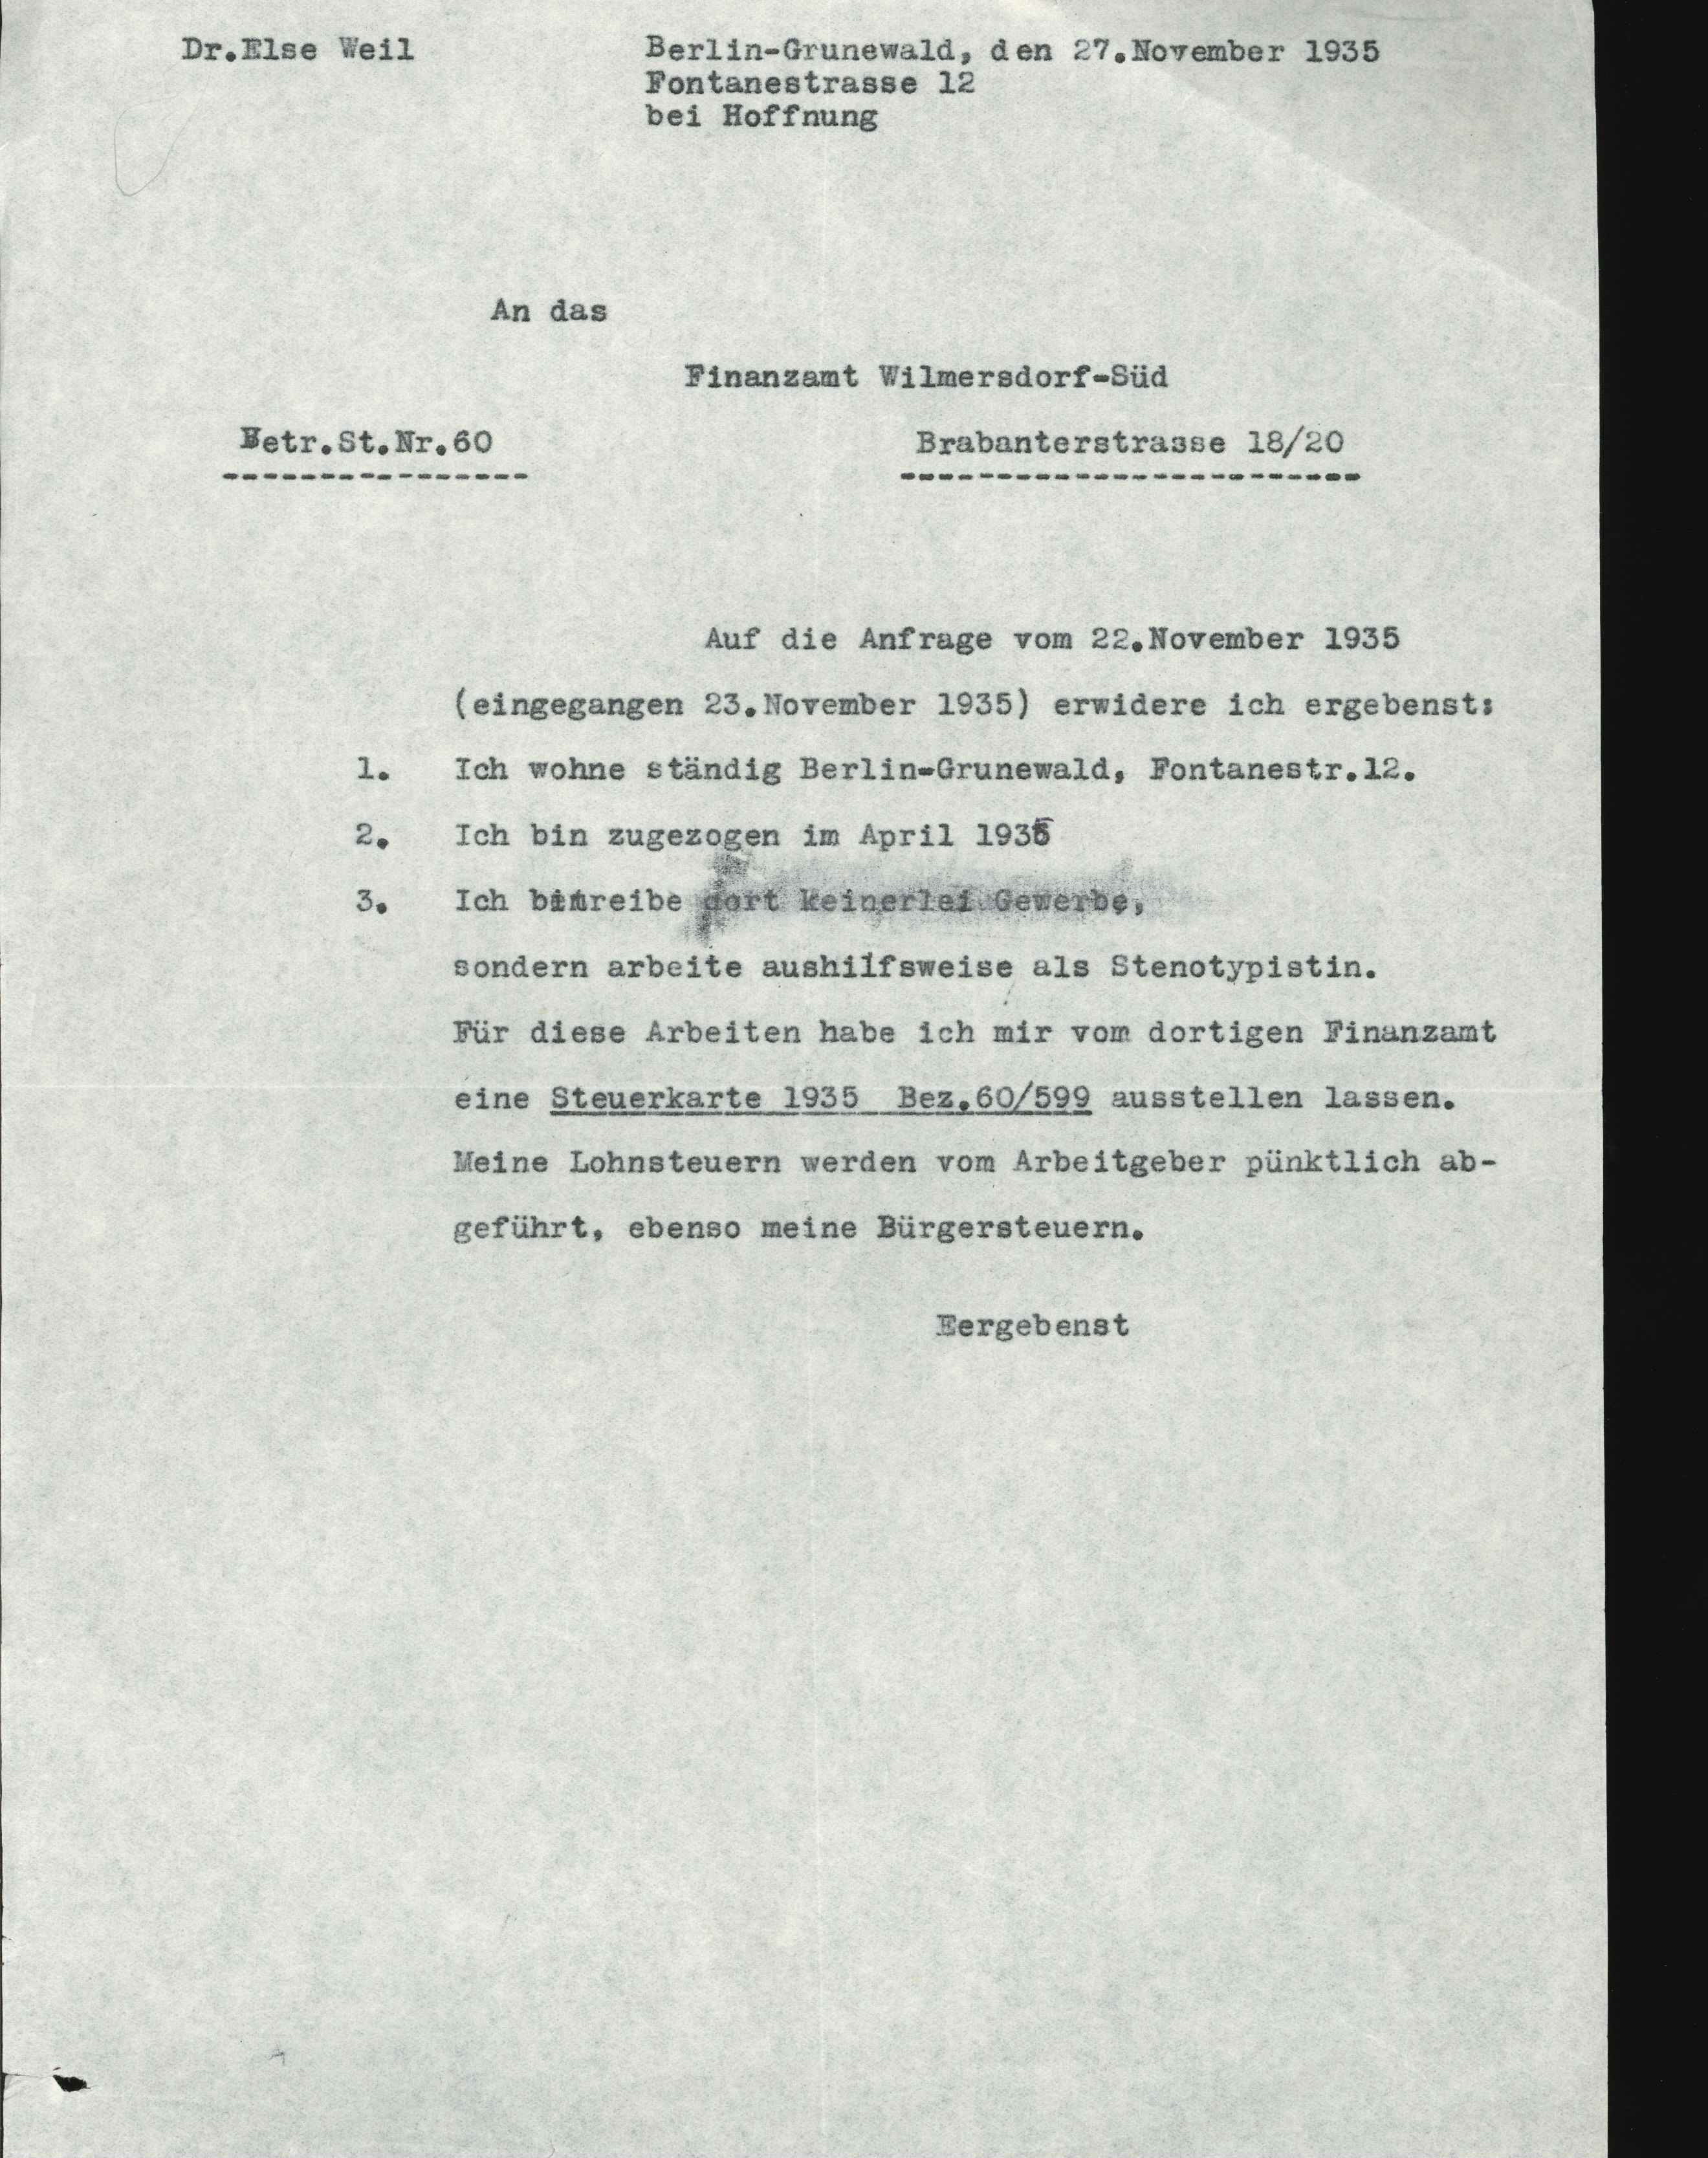 Schreiben an Finanzamt Wilmersdorf-Süd, Else Weil 1935 (KTL CC BY-NC-SA)